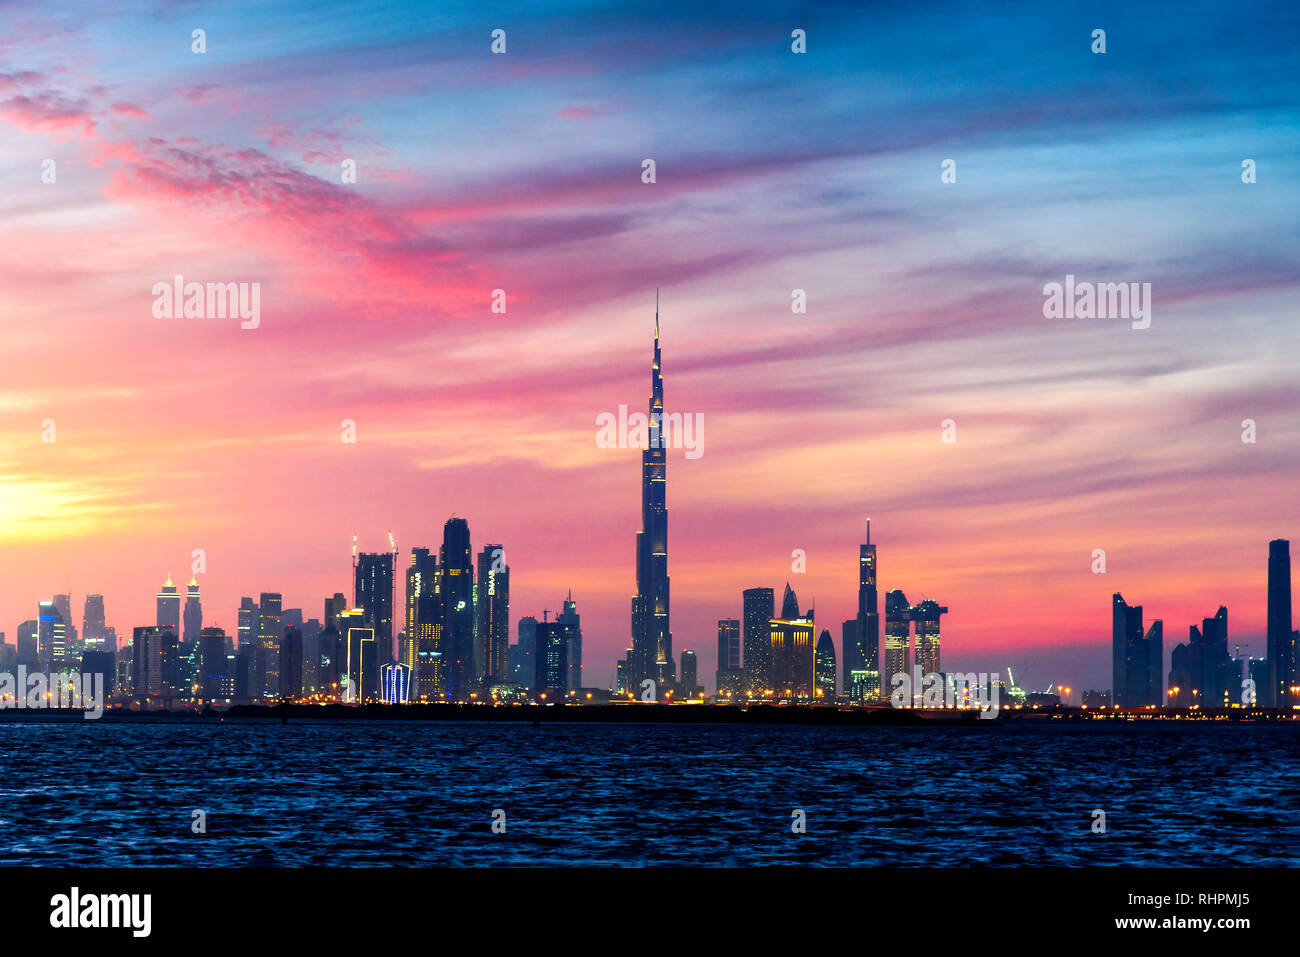 Dubaï, Émirats arabes unis - 10 janvier 2019 : coucher de soleil sur Dubaï vue sur un panorama de la crique de Dubaï Harbour Banque D'Images